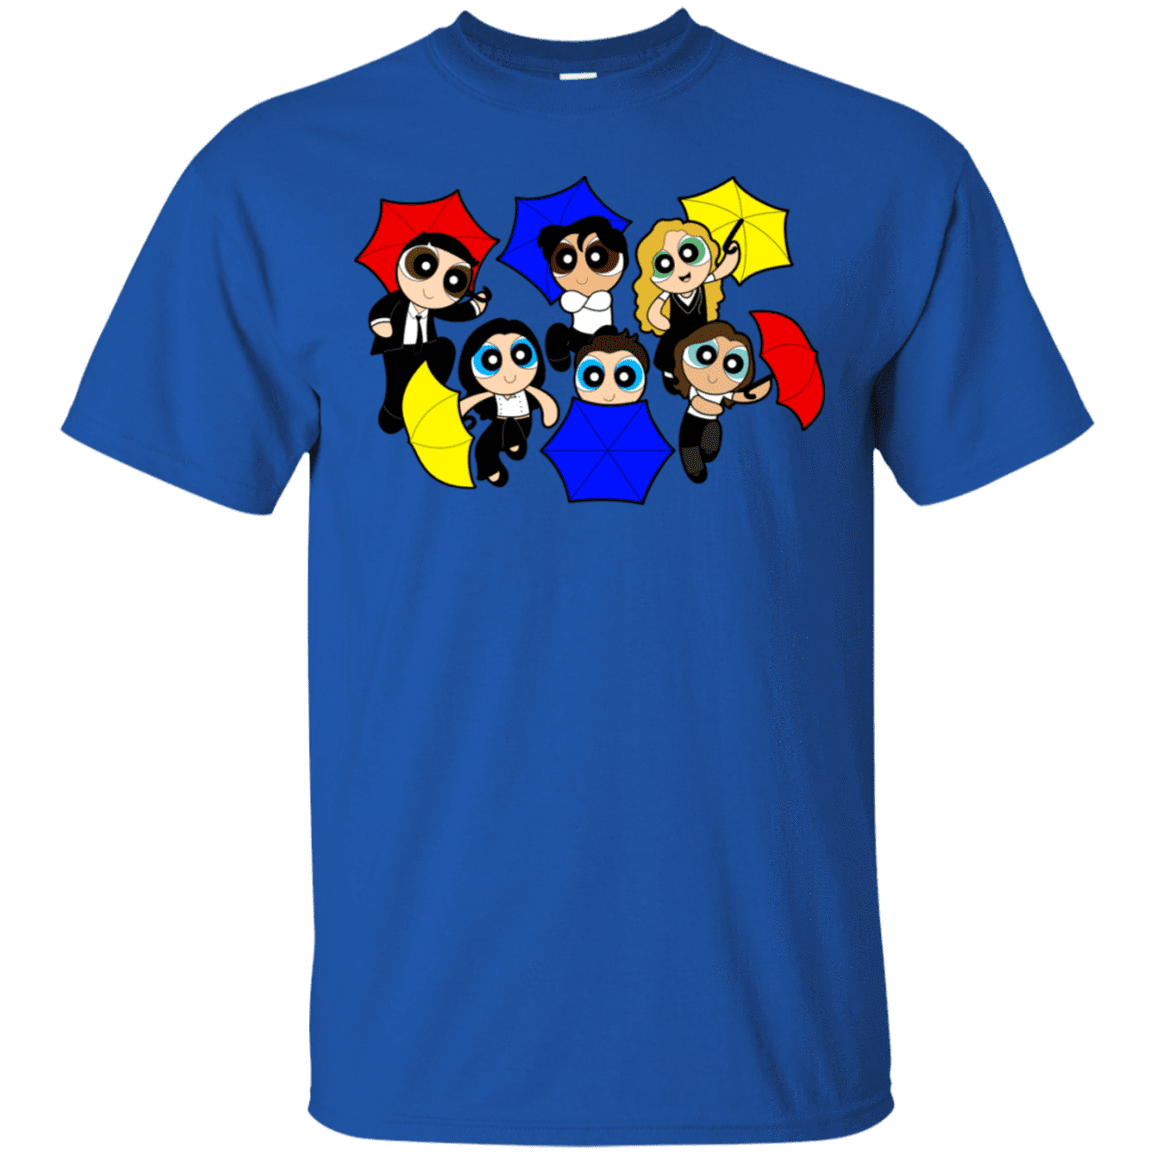 T-Shirts Royal / S Powerpuff Friends T-Shirt